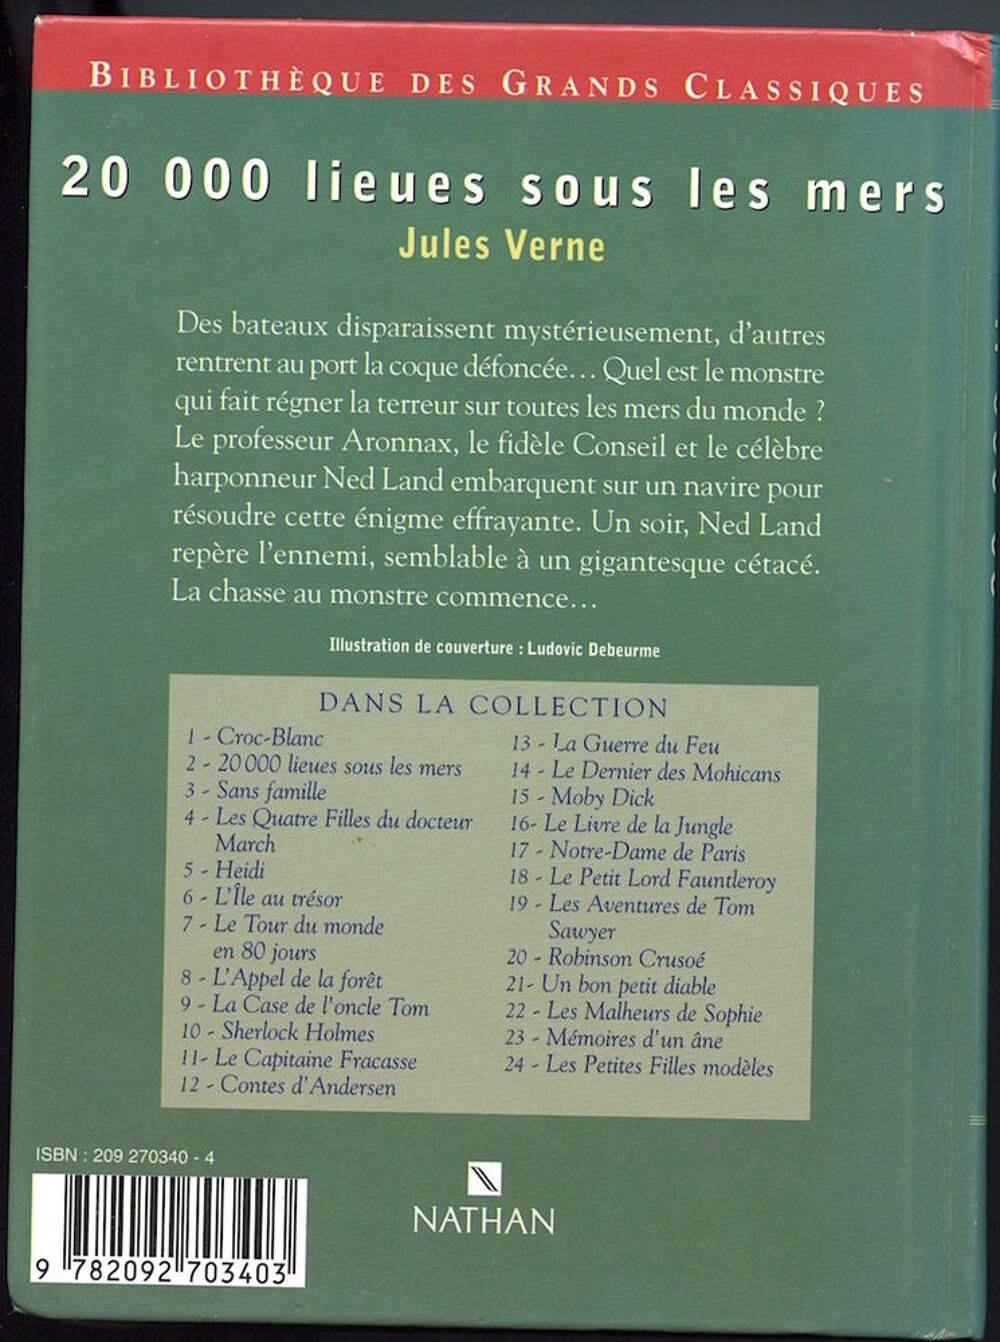 20 000 lieues sous les mers
Jules Verne
Livres et BD